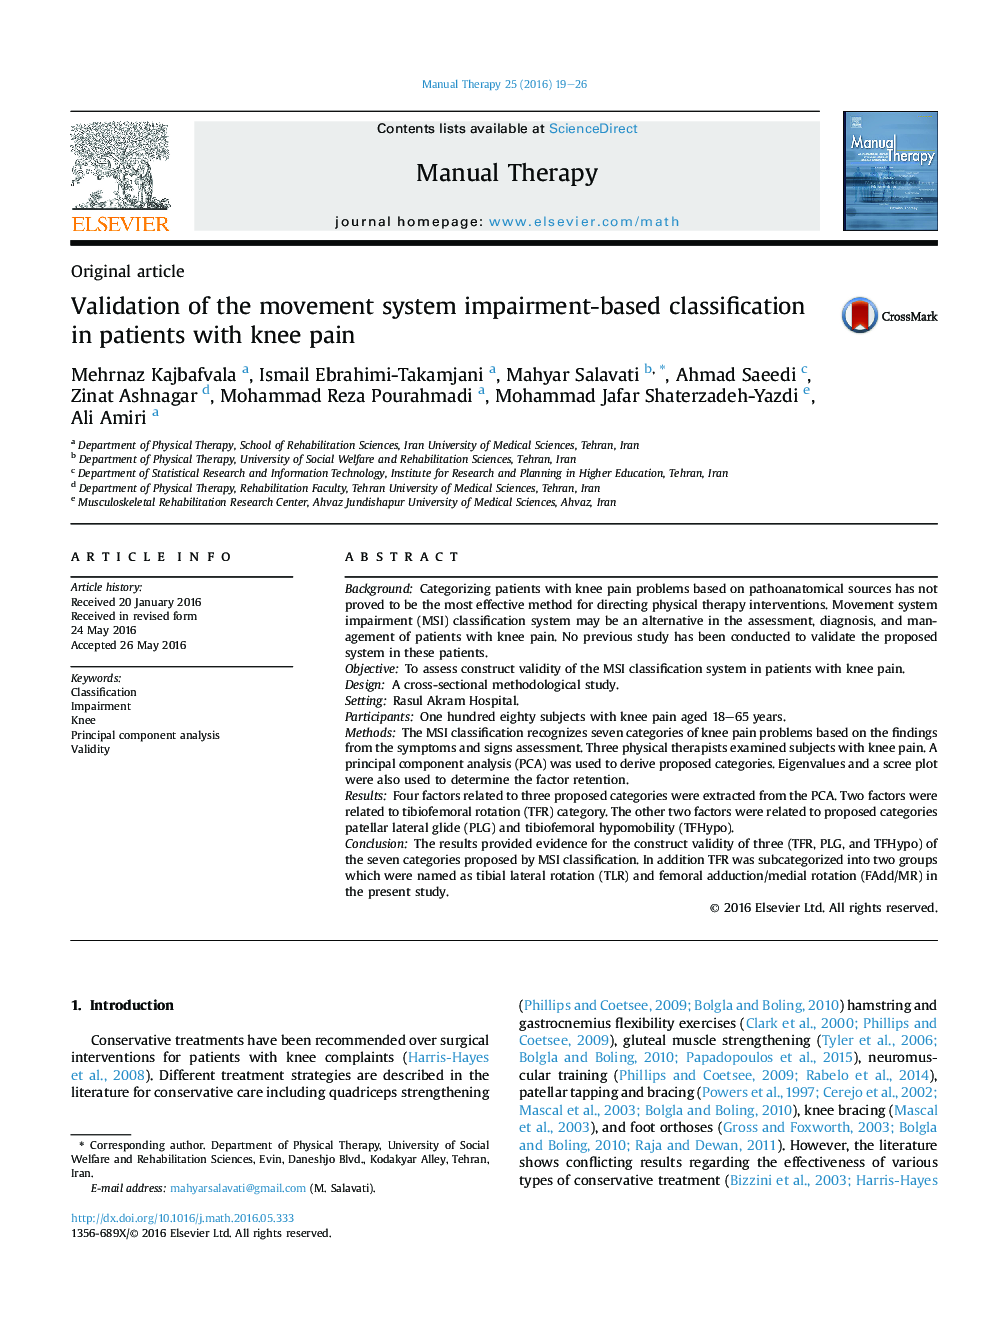 اعتبار سنجی طبقه بندی مبتنی بر اختلال سیستم حرکتی در بیماران مبتلا به درد زانو